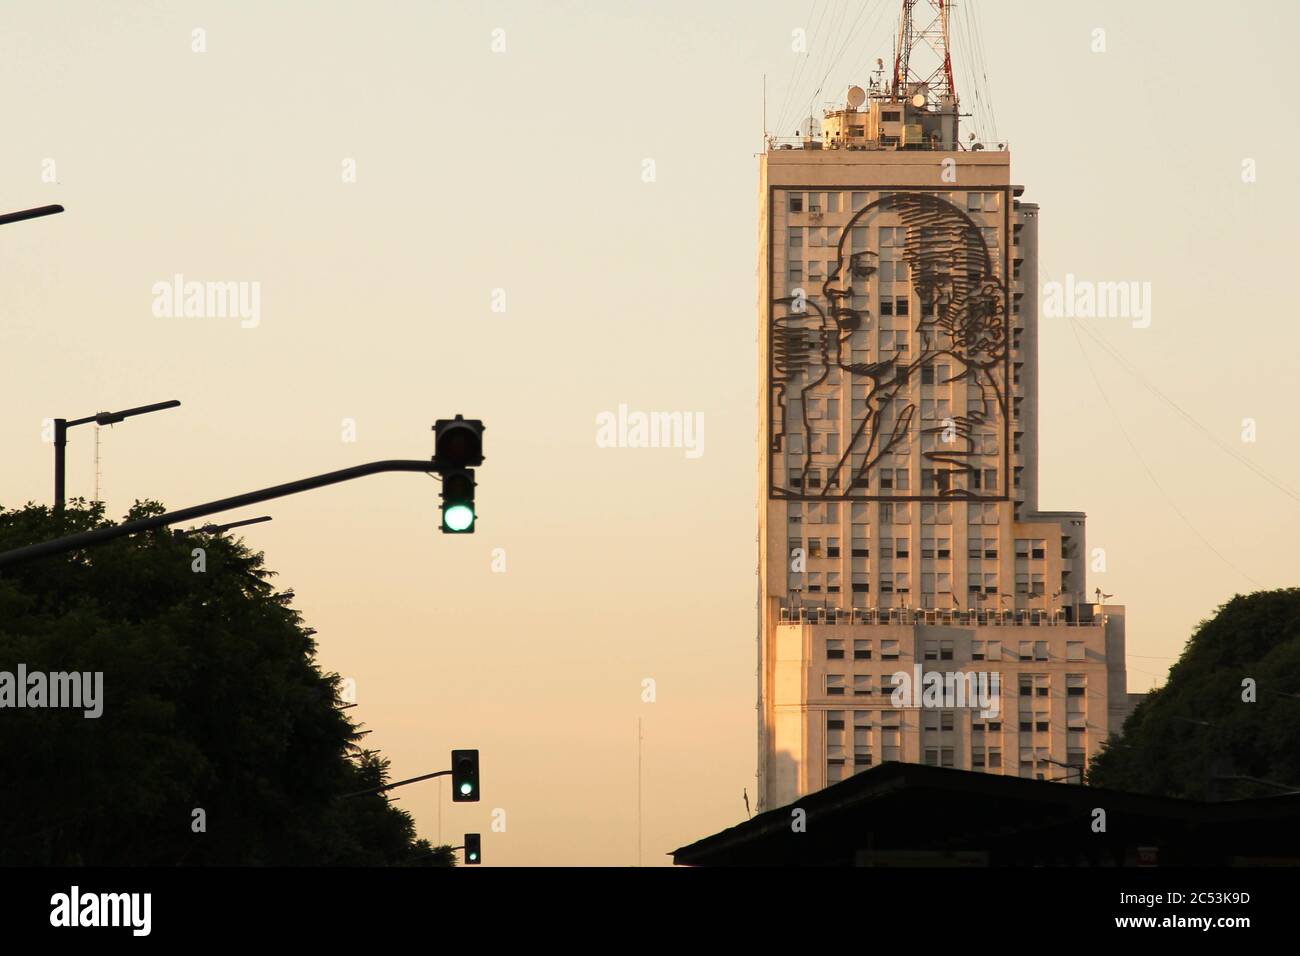 BUENOS AIRES, ARGENTINIEN - 31. März 2017: Gebäude des Ministeriums für soziale Entwicklung, in der Morgendämmerung Sonnenaufgang, mit großen Stahlbild von Eva Peron (Evita) g Stockfoto